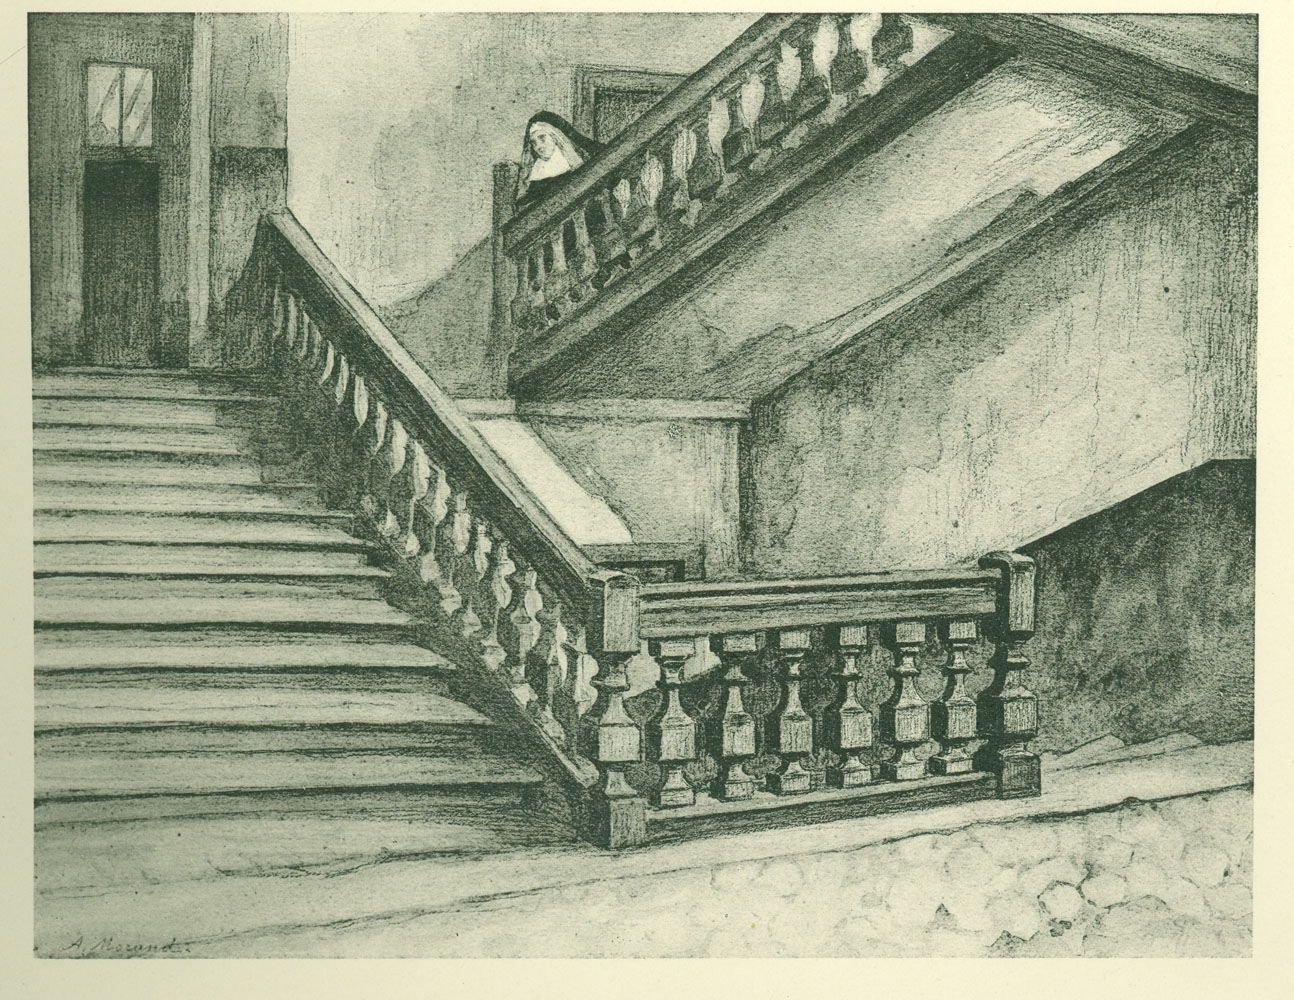 Sœurs de Marie-Joseph, interior staircase, sister